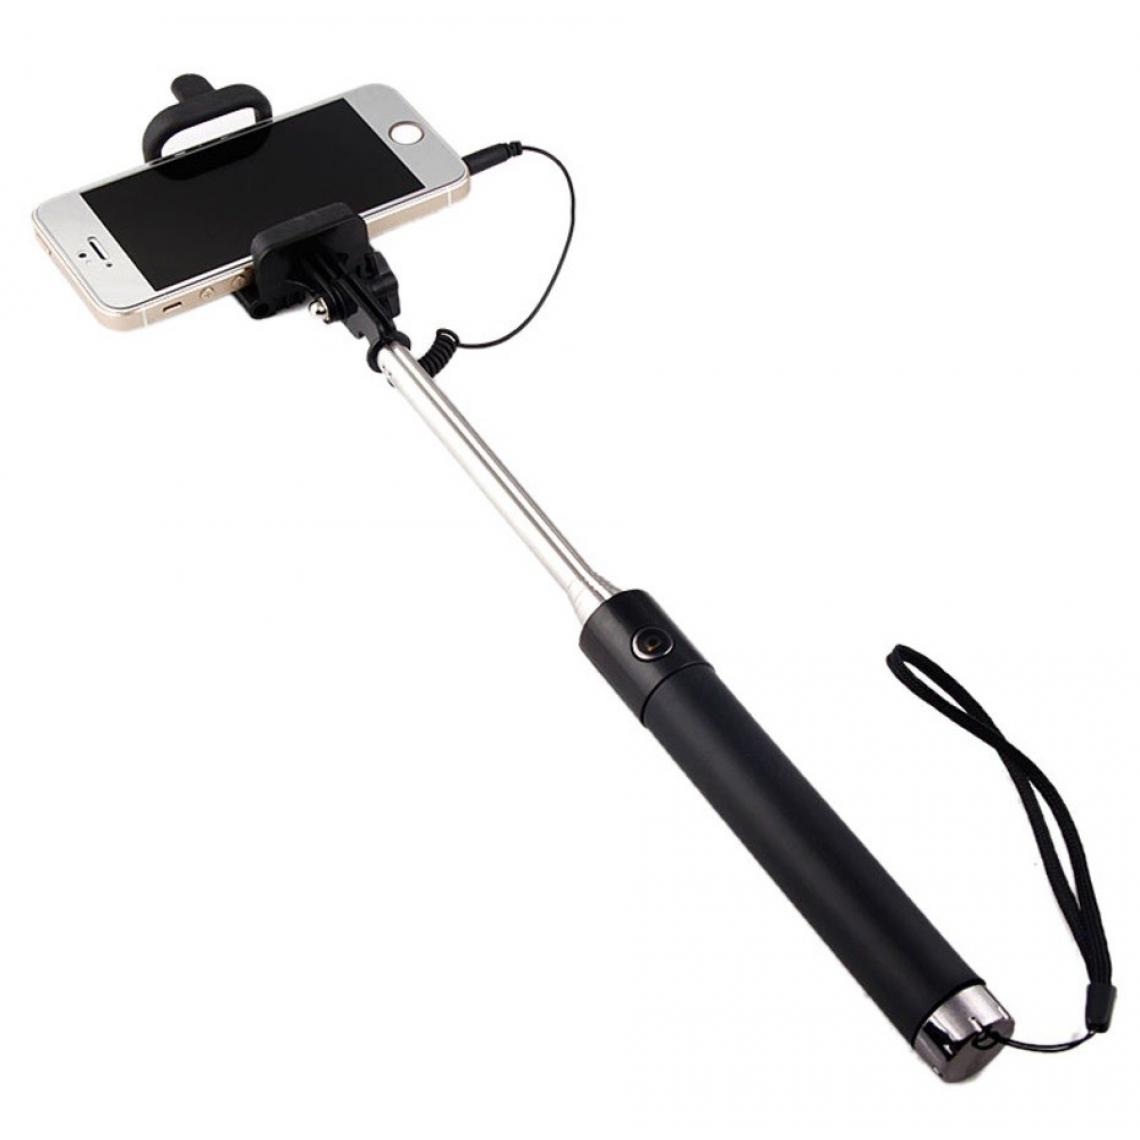 Shot - Selfie Stick Metal pour "HUAWEI P40 lite E" Smartphone Perche Android IOS Reglable Bouton Photo Cable Jack Noir - Autres accessoires smartphone